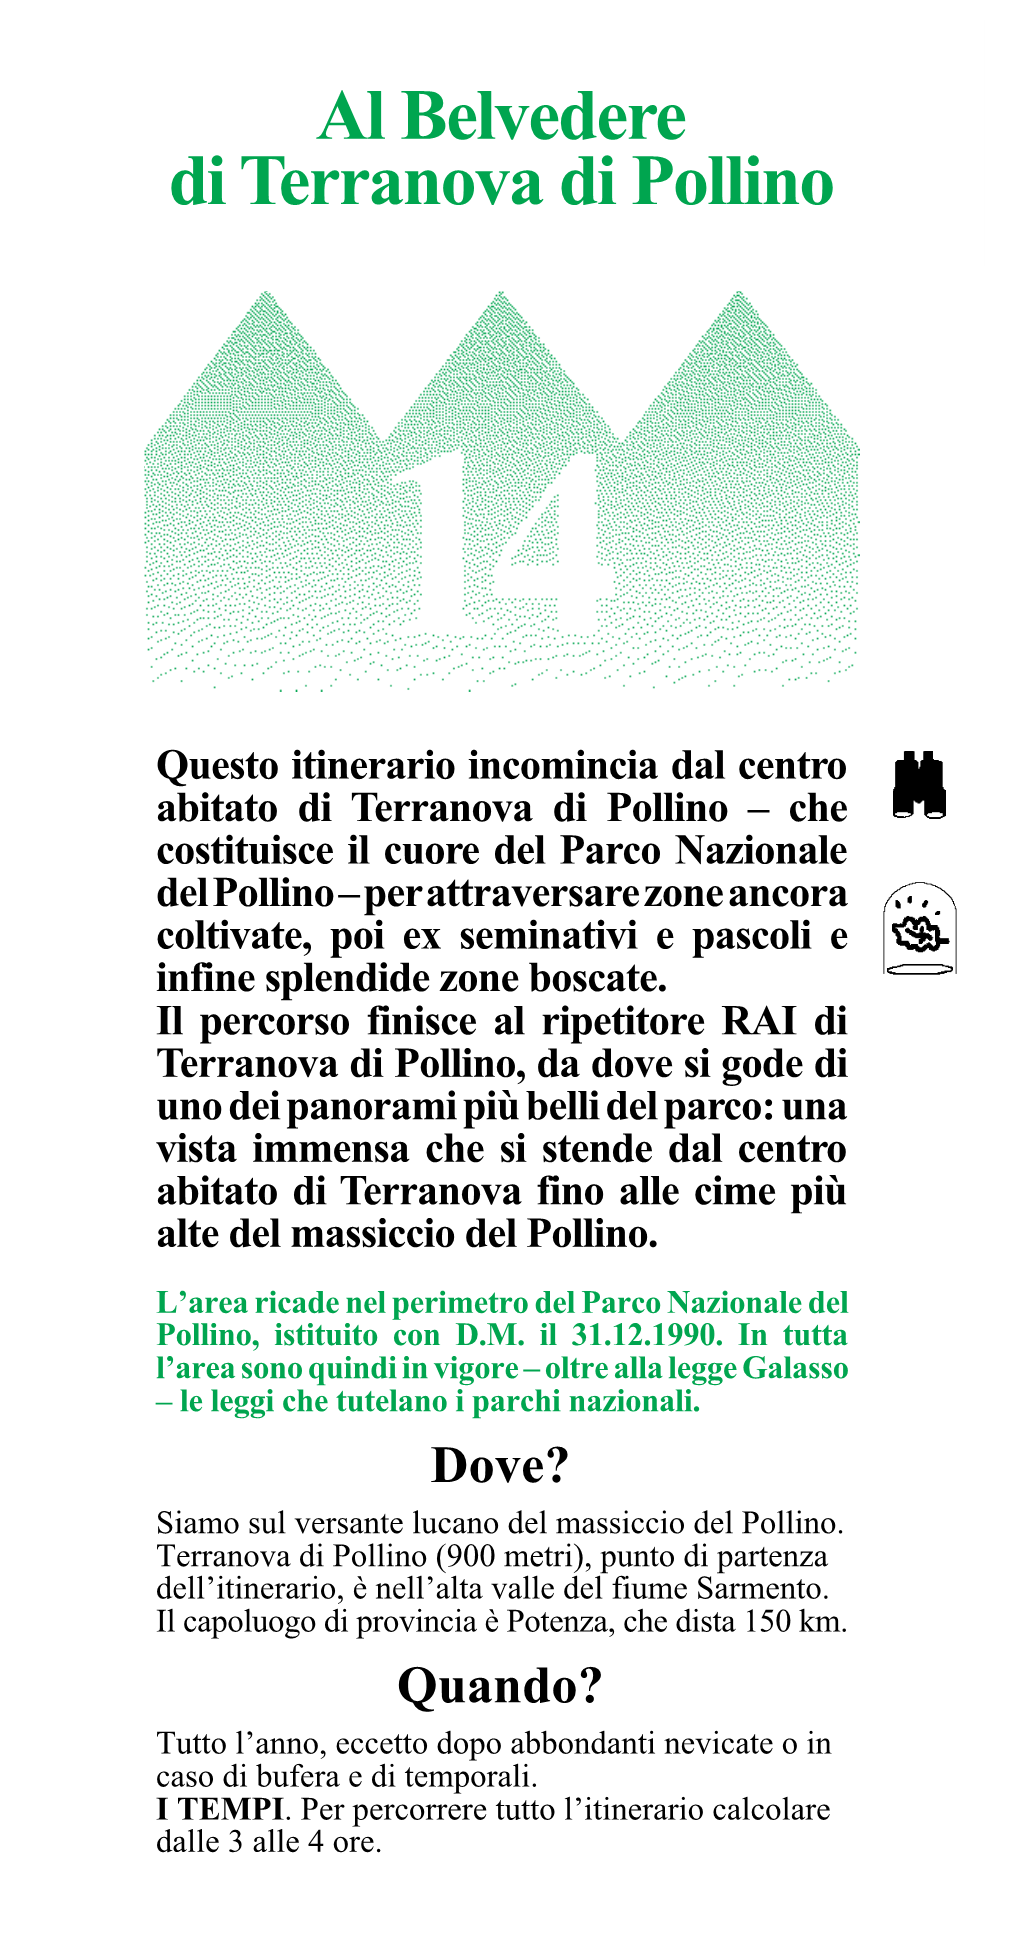 Al Belvedere Di Terranova Di Pollino 76 Come? in AUTOMOBILE